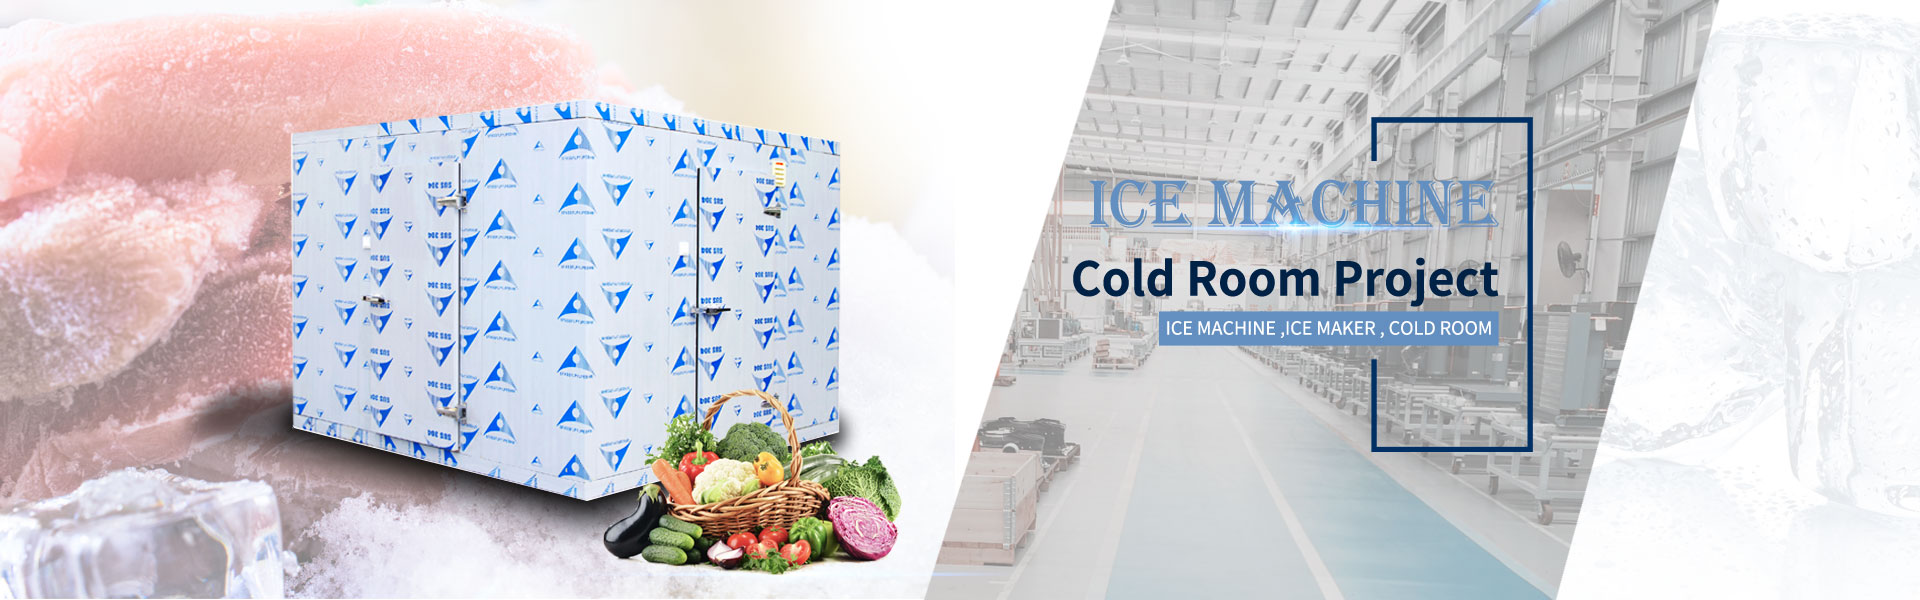 jääkone, jääpalakone, kylmähuone,Guangzhou Hefforts Refrigeration Equipment Co.,Ltd.